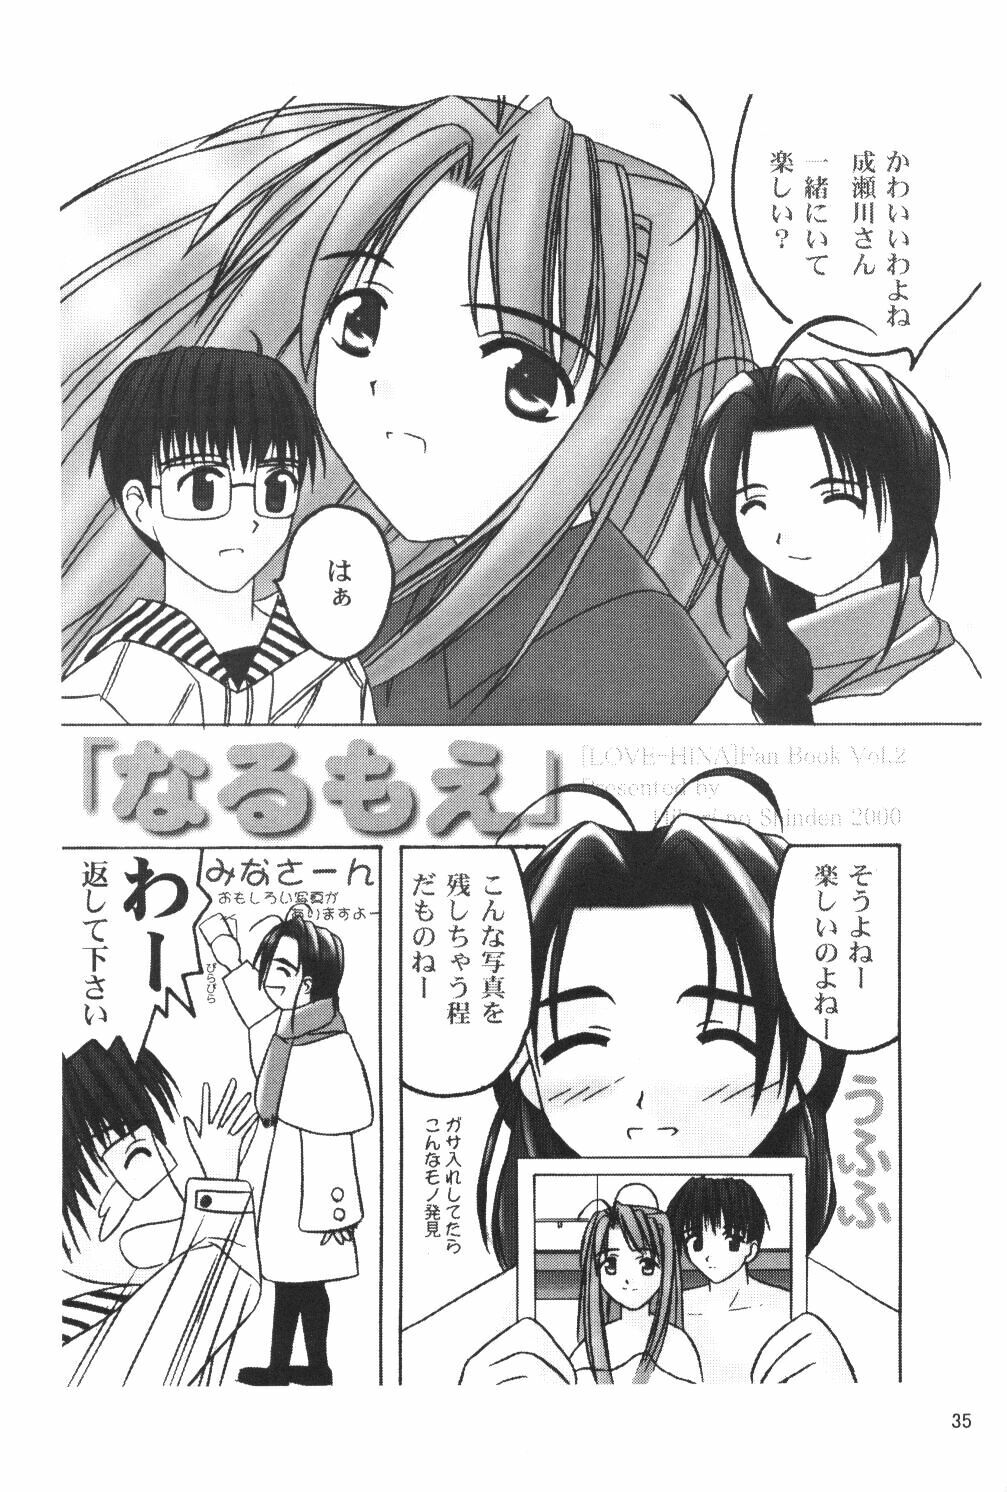 (SC7) [Hikari no Shinden (Koukami Sayana)] Naru Moe 2 (Love Hina) page 33 full